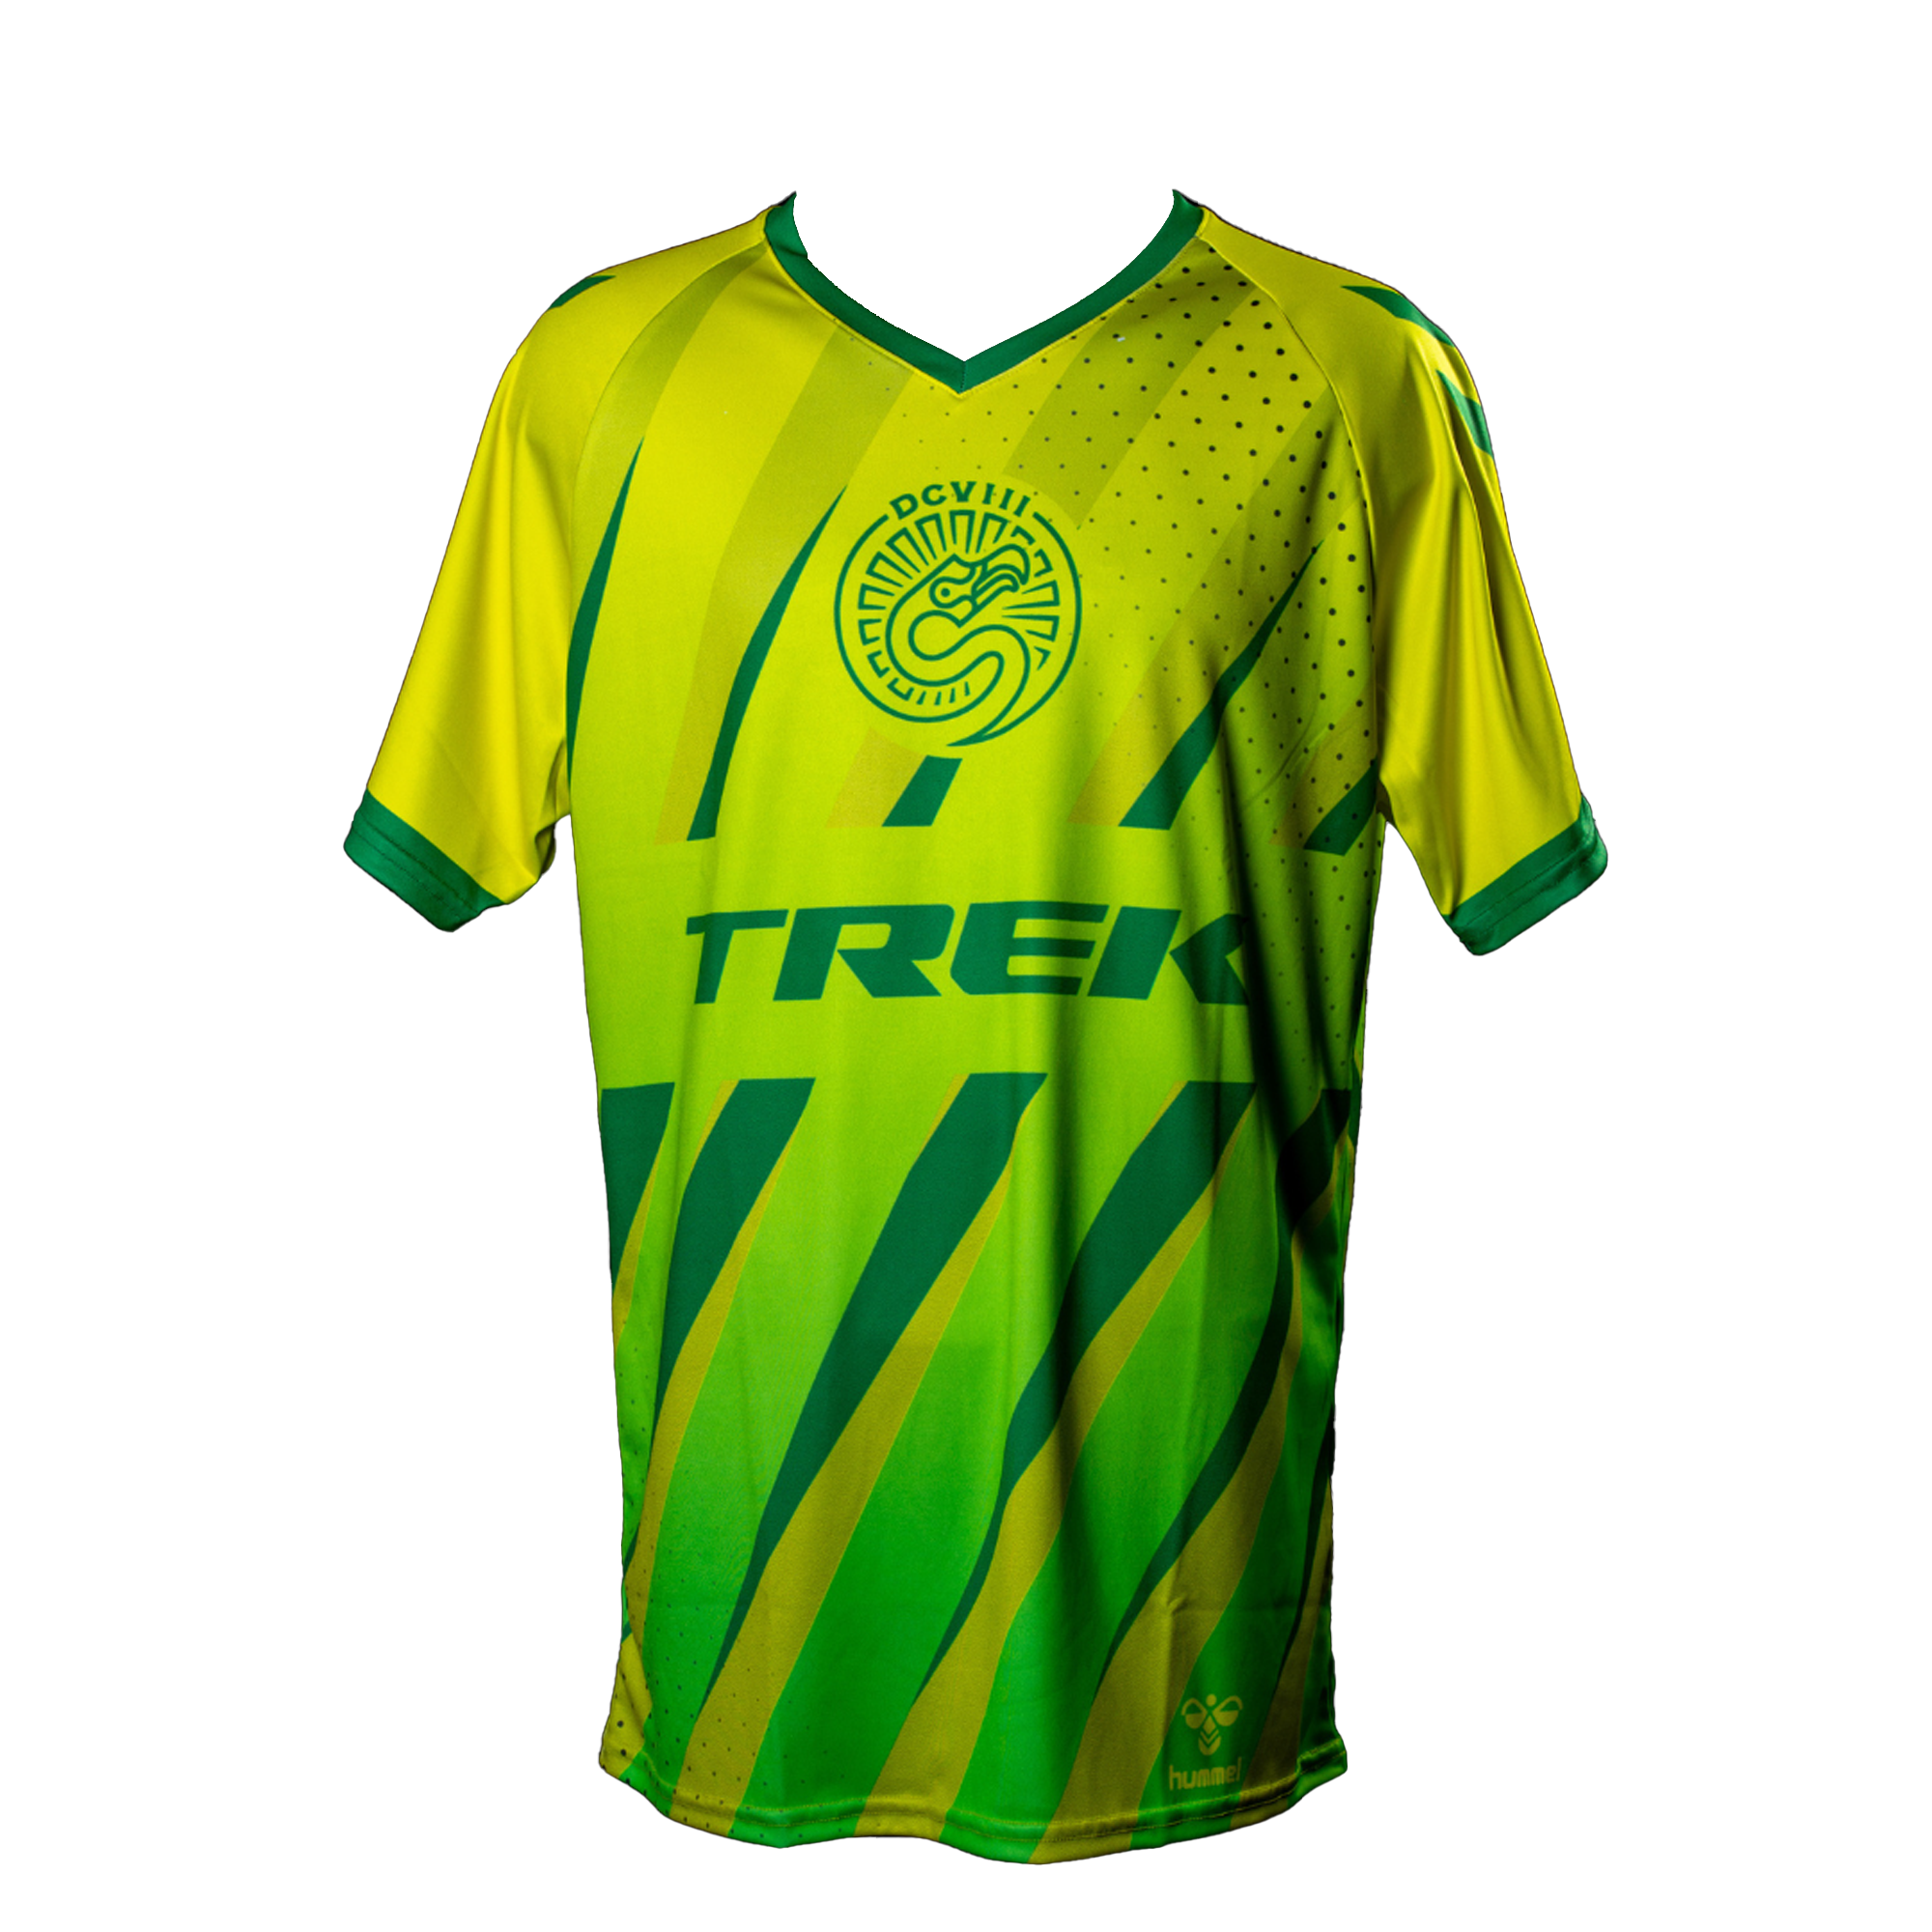 Brazil Training Jersey 22-23 Football Jersey Soccer Jersey t-shirt